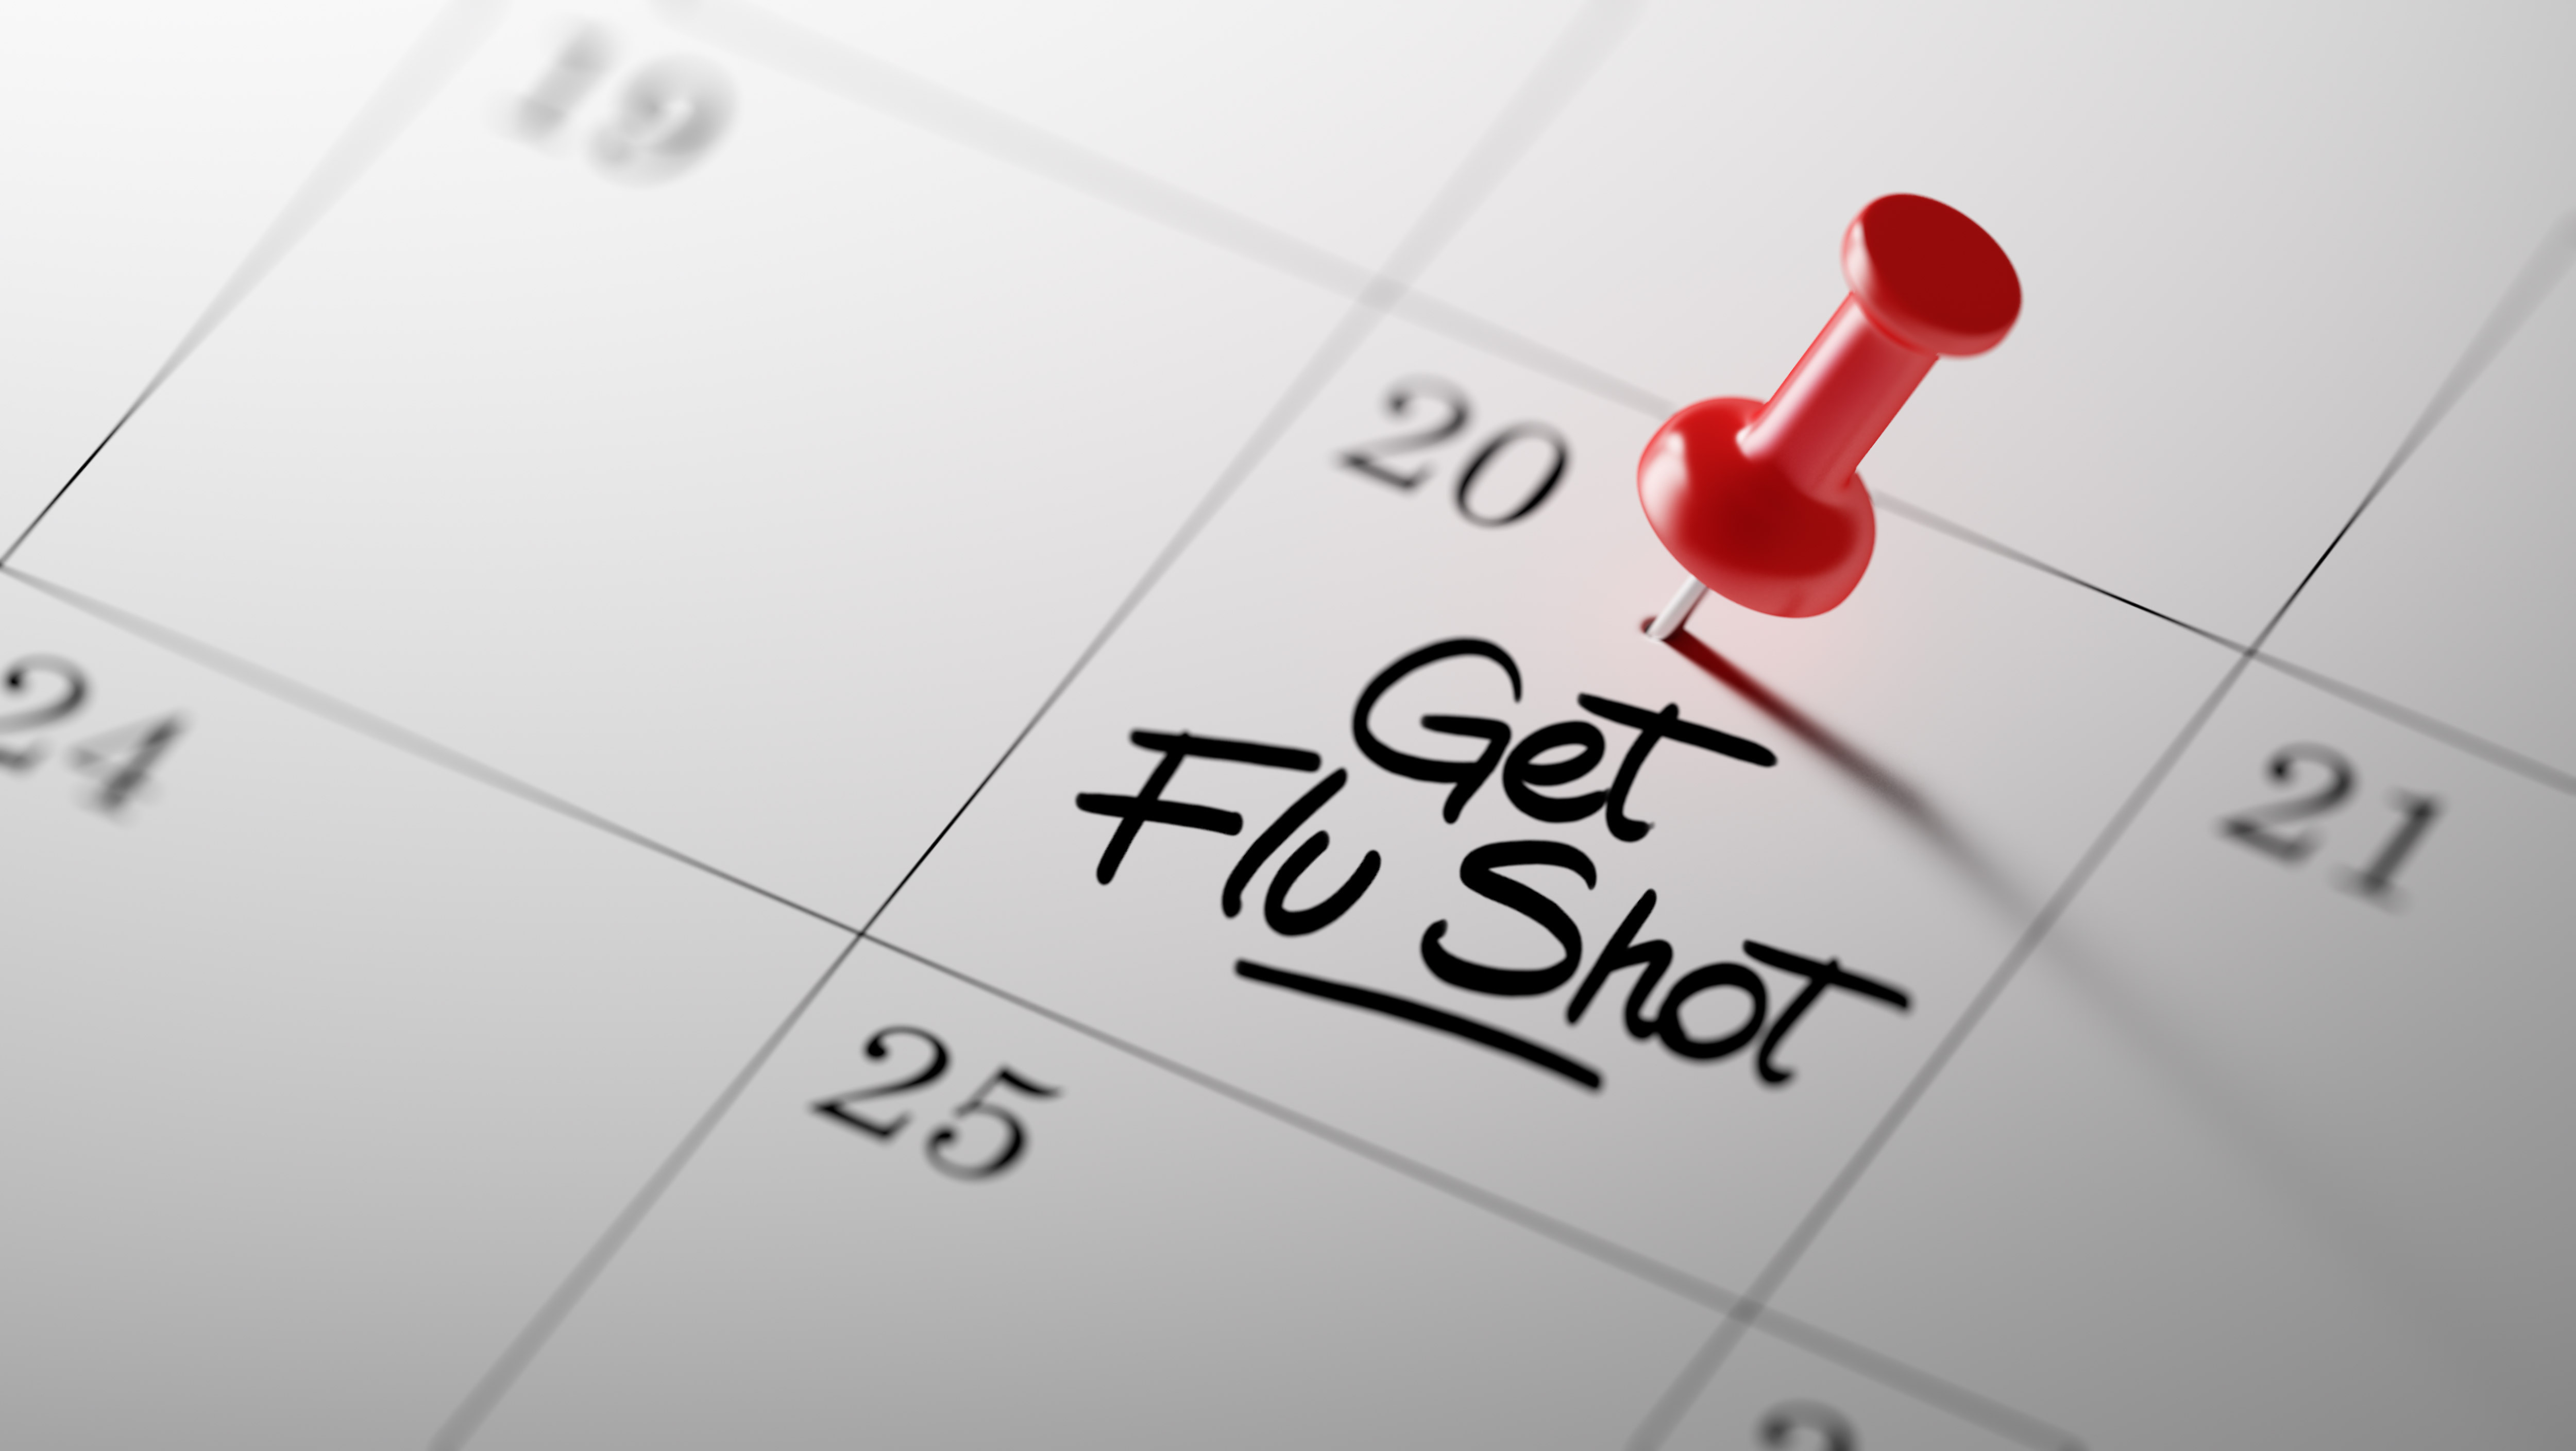 dizziness flu shot side effect